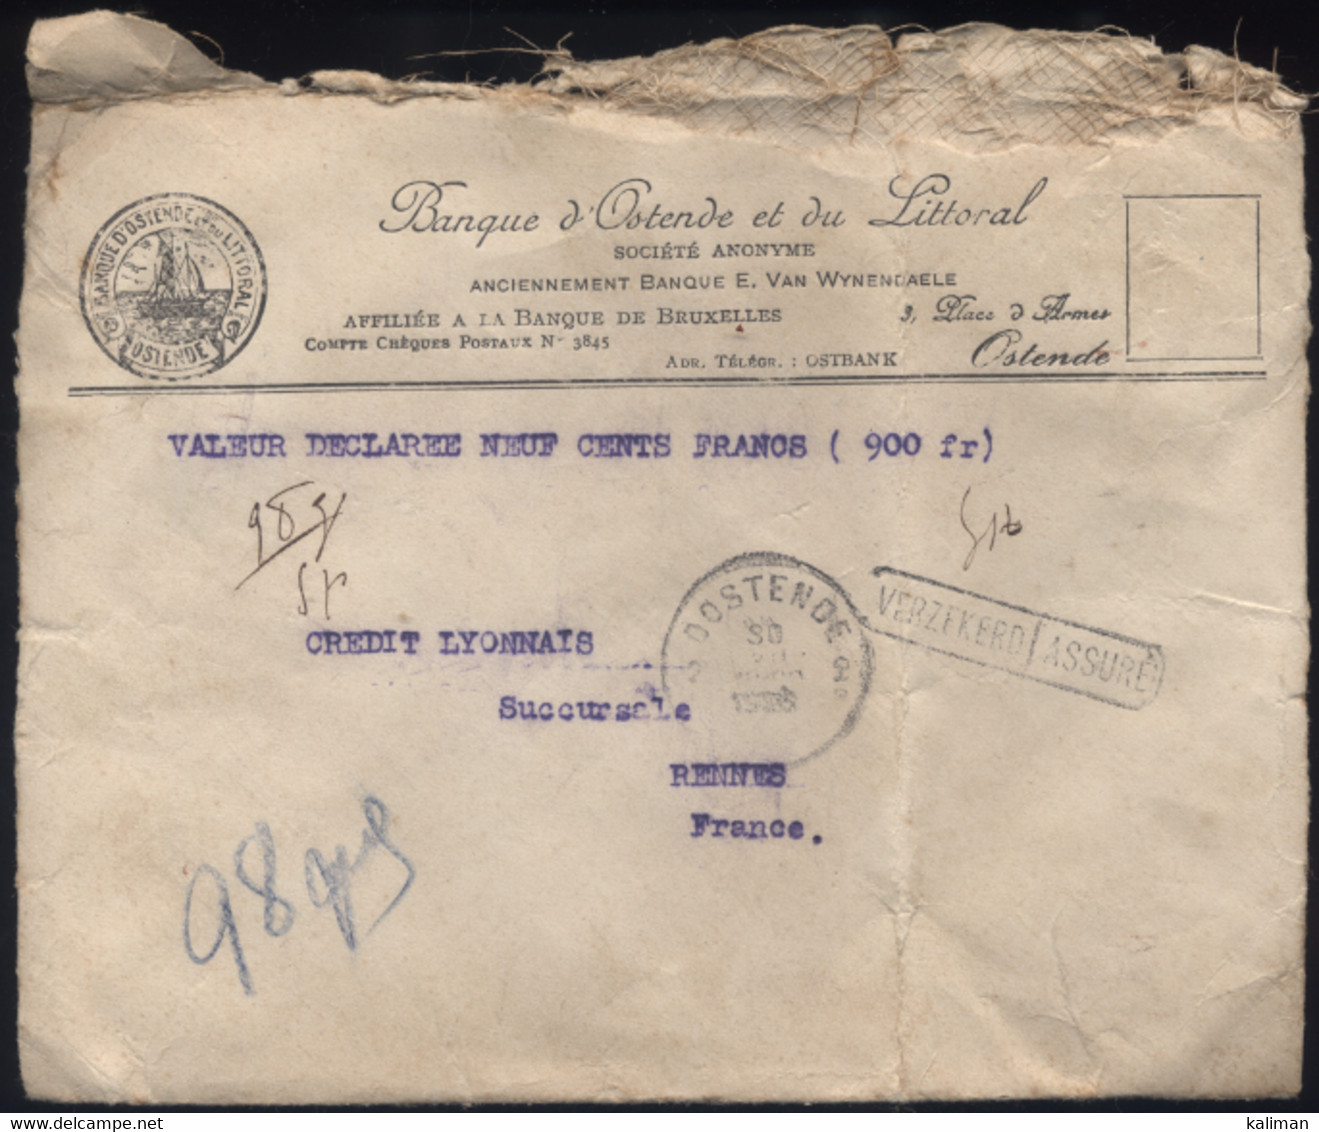 Belgique - N° 207 209 248 LsC Banque D'Ostende Valeur Déclarée Assuré - Ostende Pour Rennes - 30/07/1928 - Covers & Documents